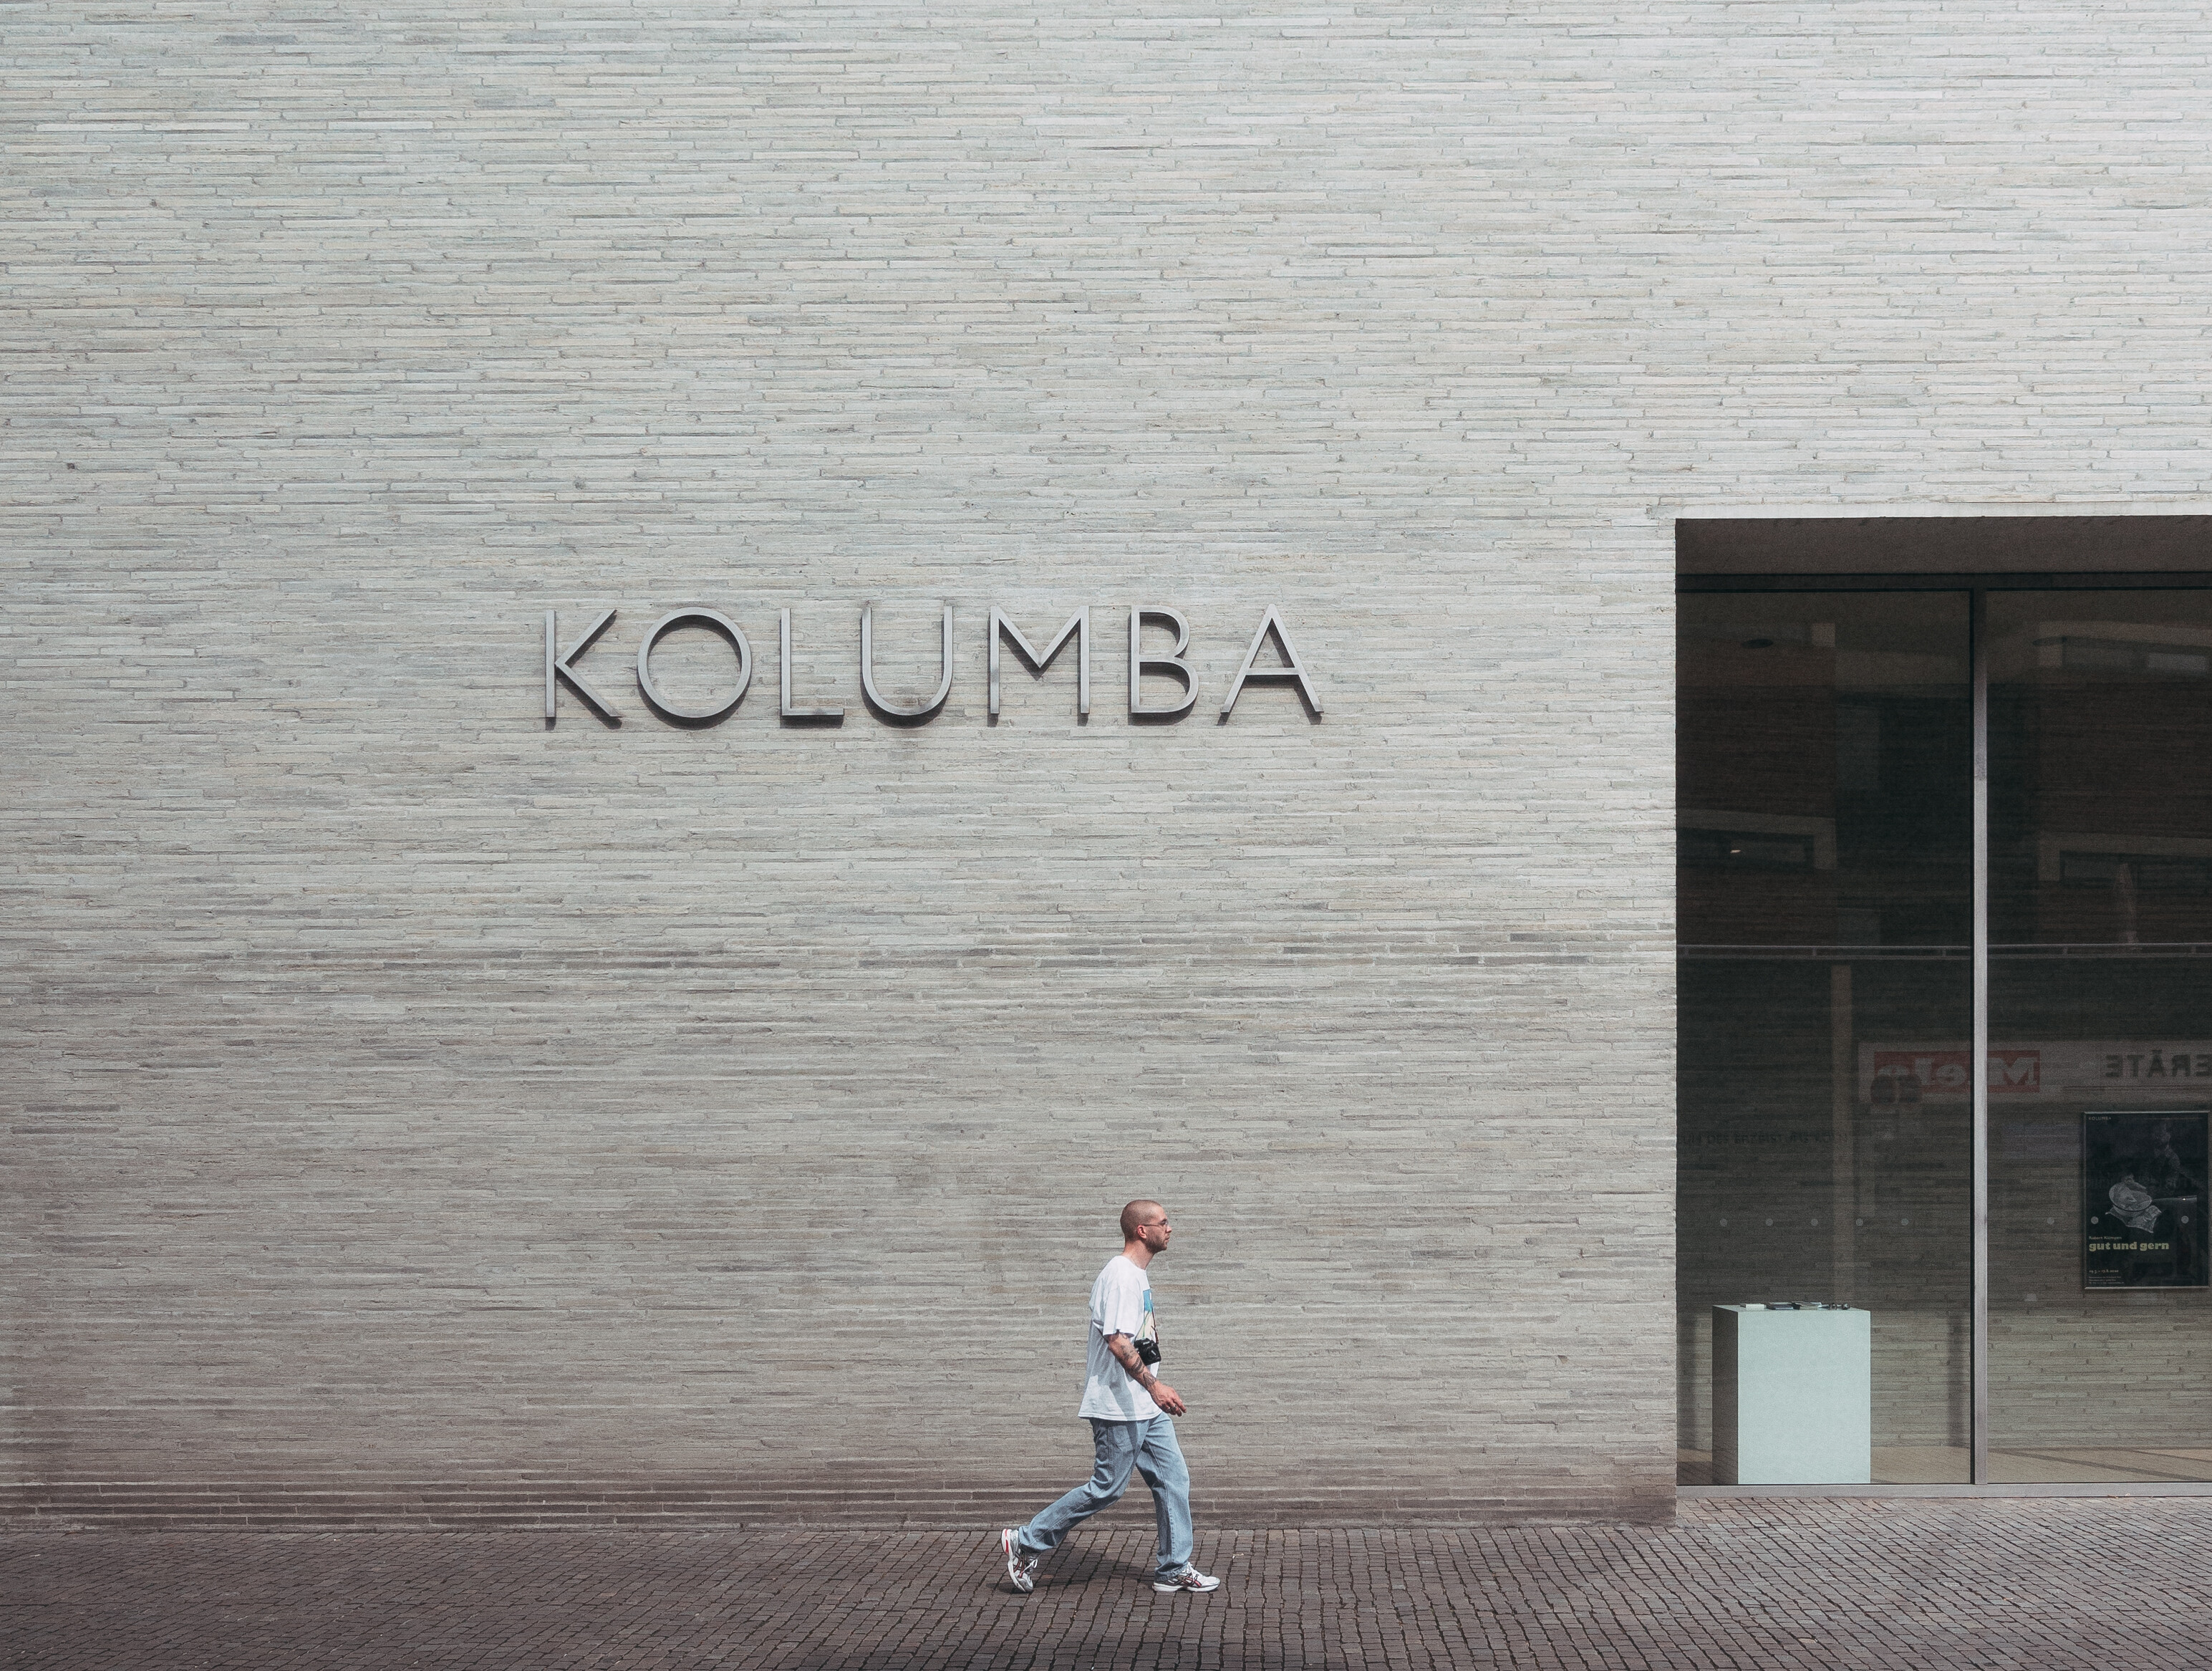 Teil der Fassade am Eingangsbereich des Museums Kolumba in Köln